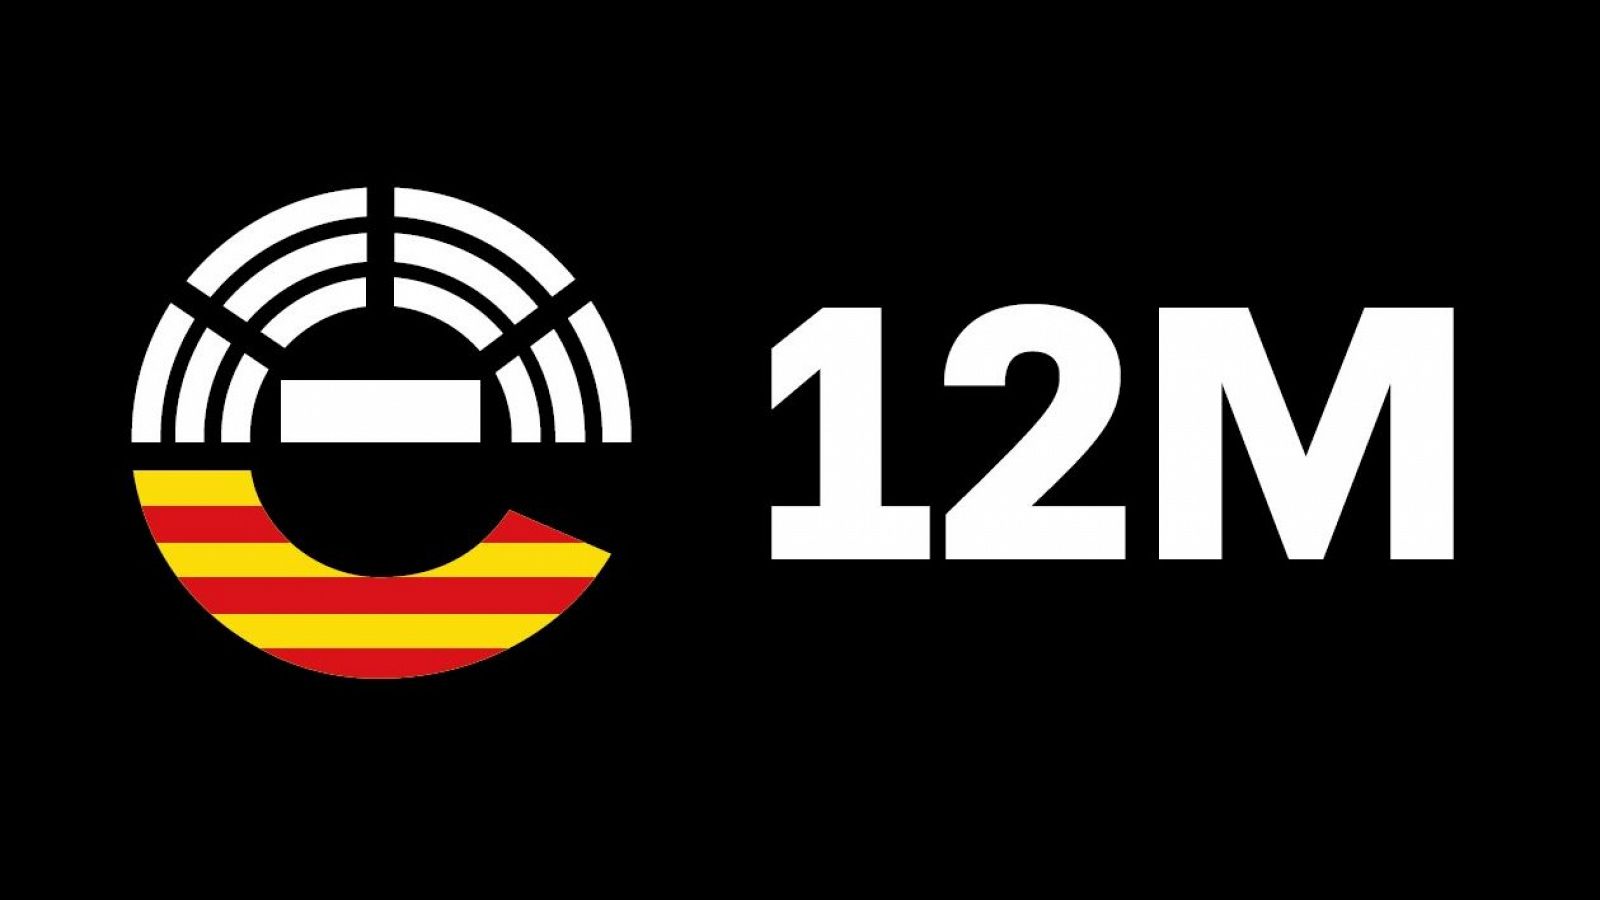 Dades importants sobre les eleccions catalanes del 12-M